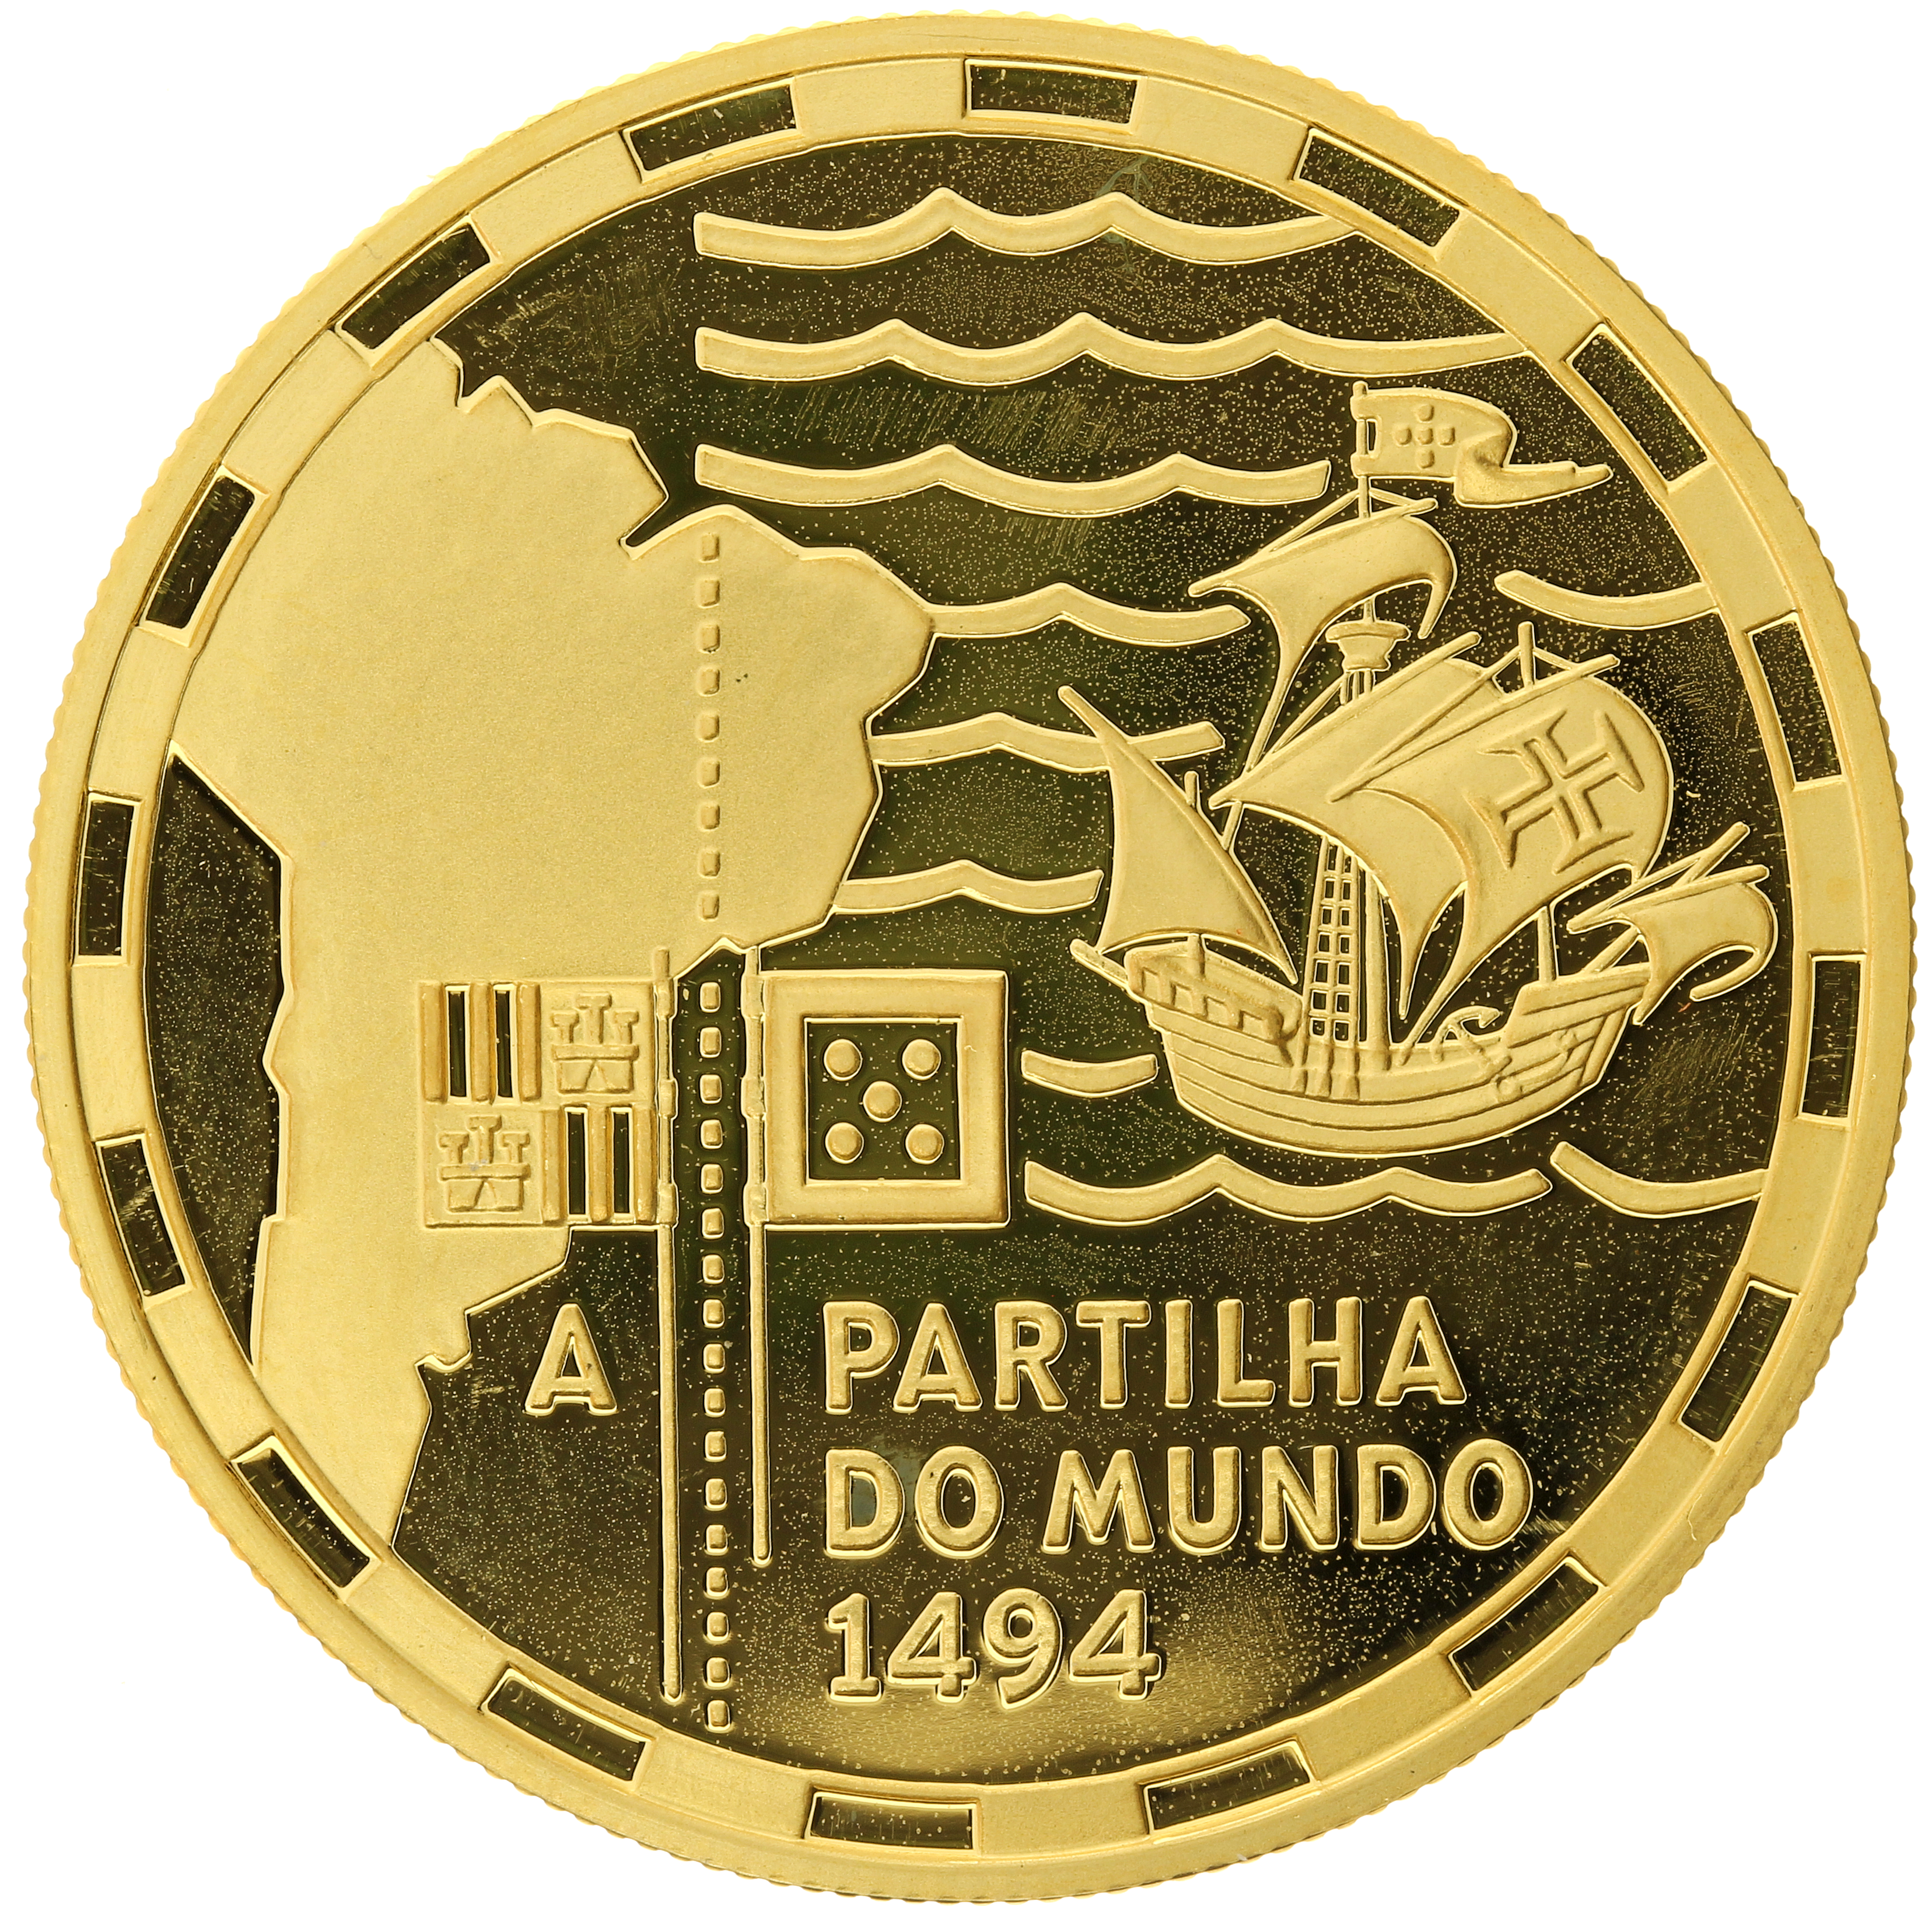 Portugal - 200 escudos - 1994 - Partilha do Mundo 